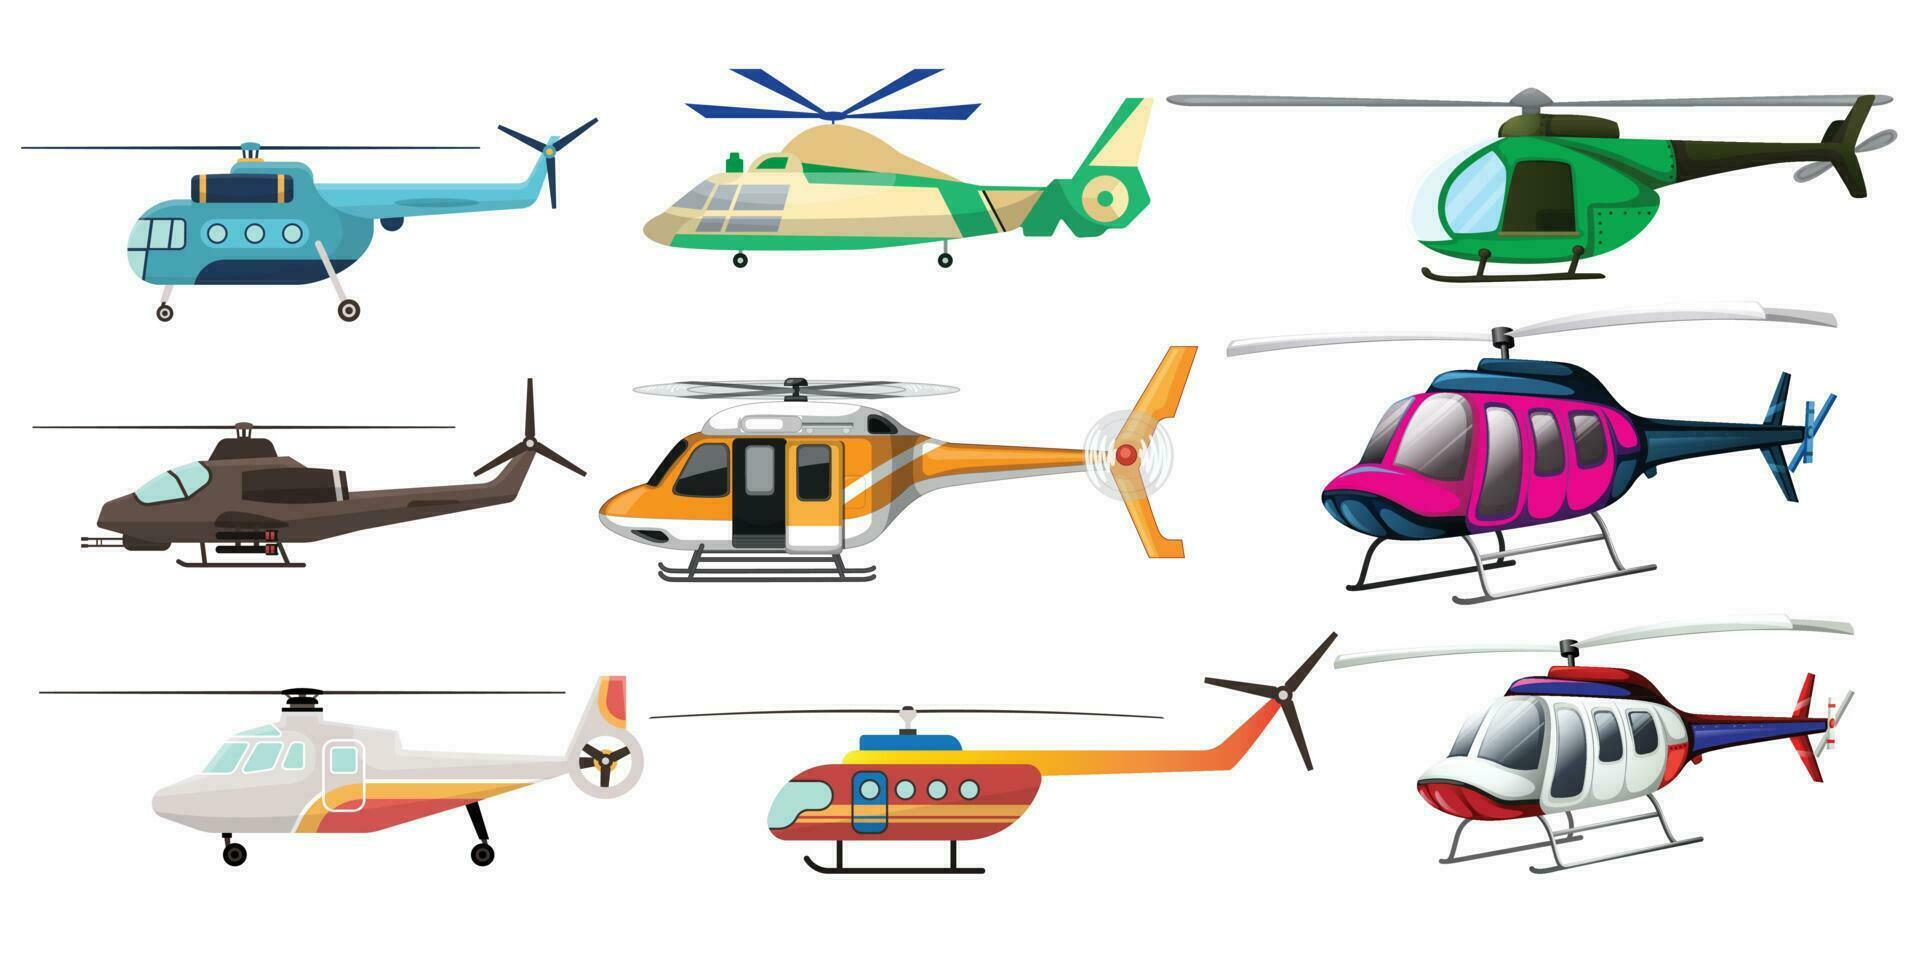 flygande helikopter. flygplan fordon med färgrik cockpit och rotera turbin objekt samling vektor